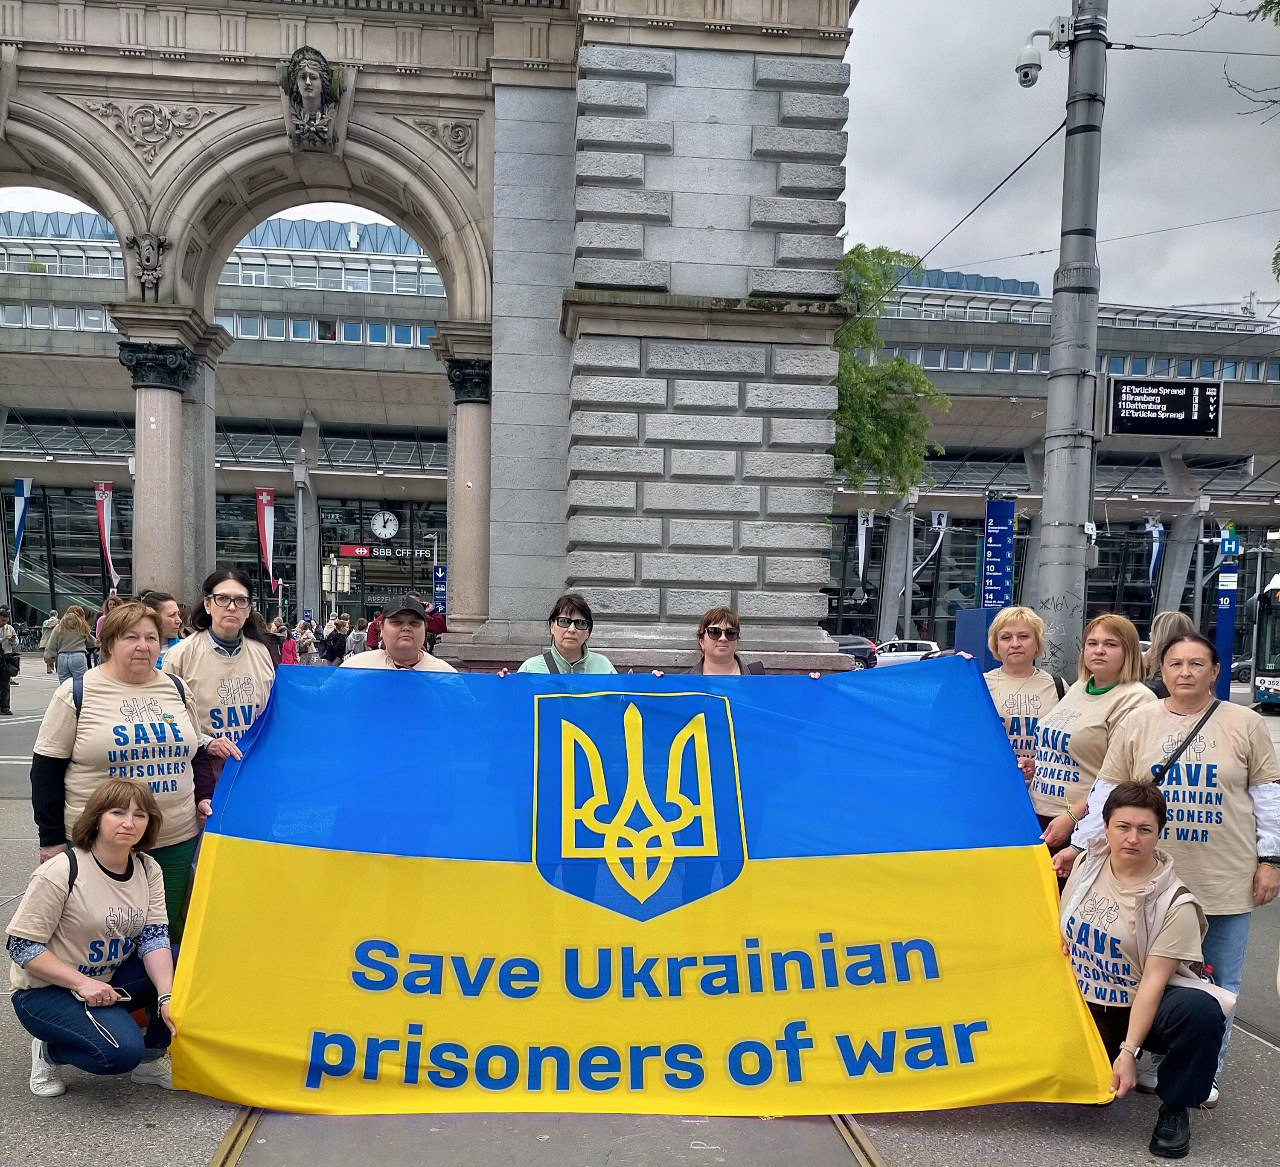 Акція “SAVE UKRAINIAN PRISONERS OF WAR”м. Люцерна. Швейцарія